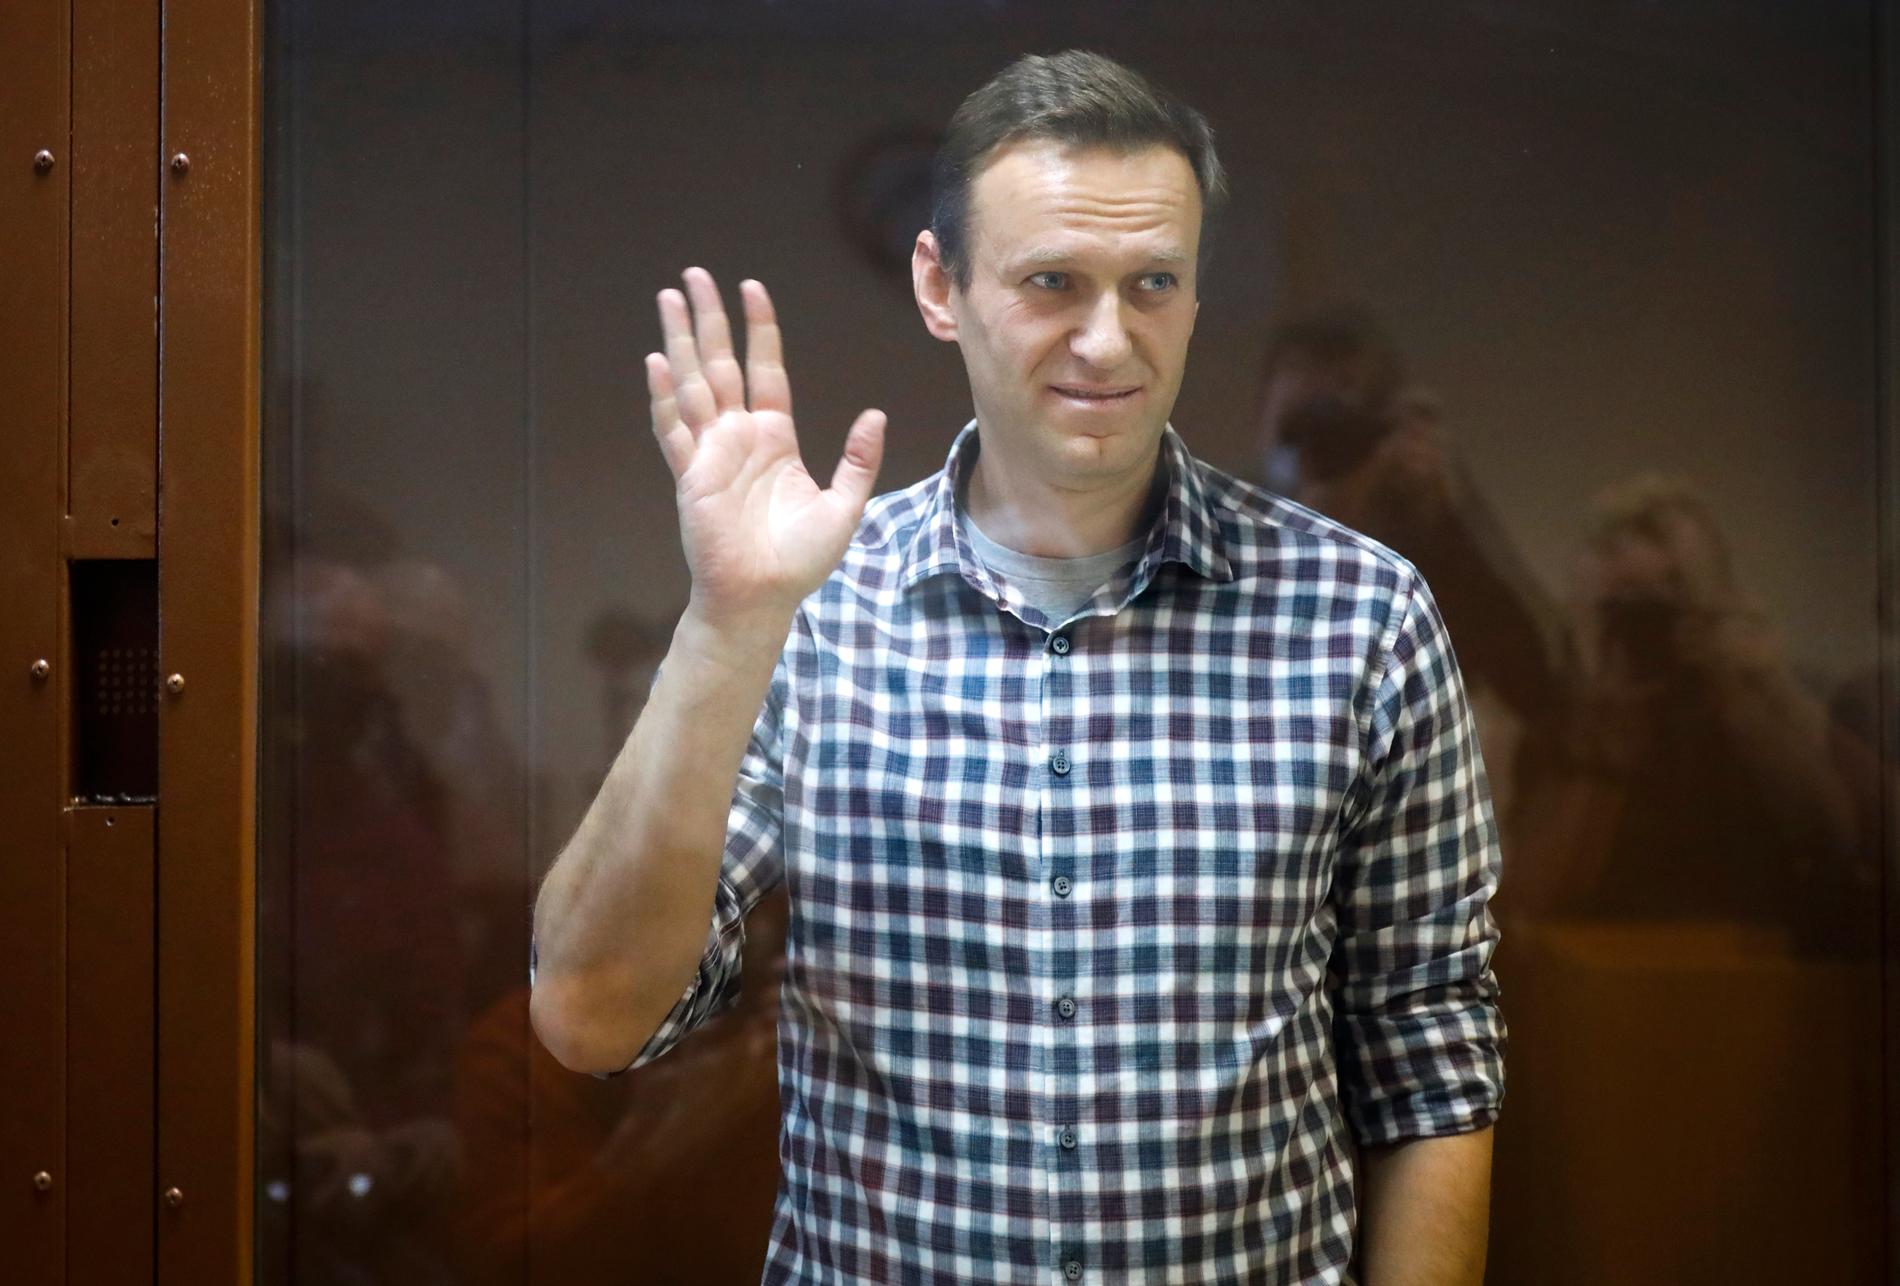 Den ryske oppositionspolitikern Aleksej Navalnyj när han tidigare i år framträdde i domstol i Moskva. Därpå fördes han till fängelse utanför den ryska huvudstaden där han nu avtjänar ett flerårigt fängelsestraff.